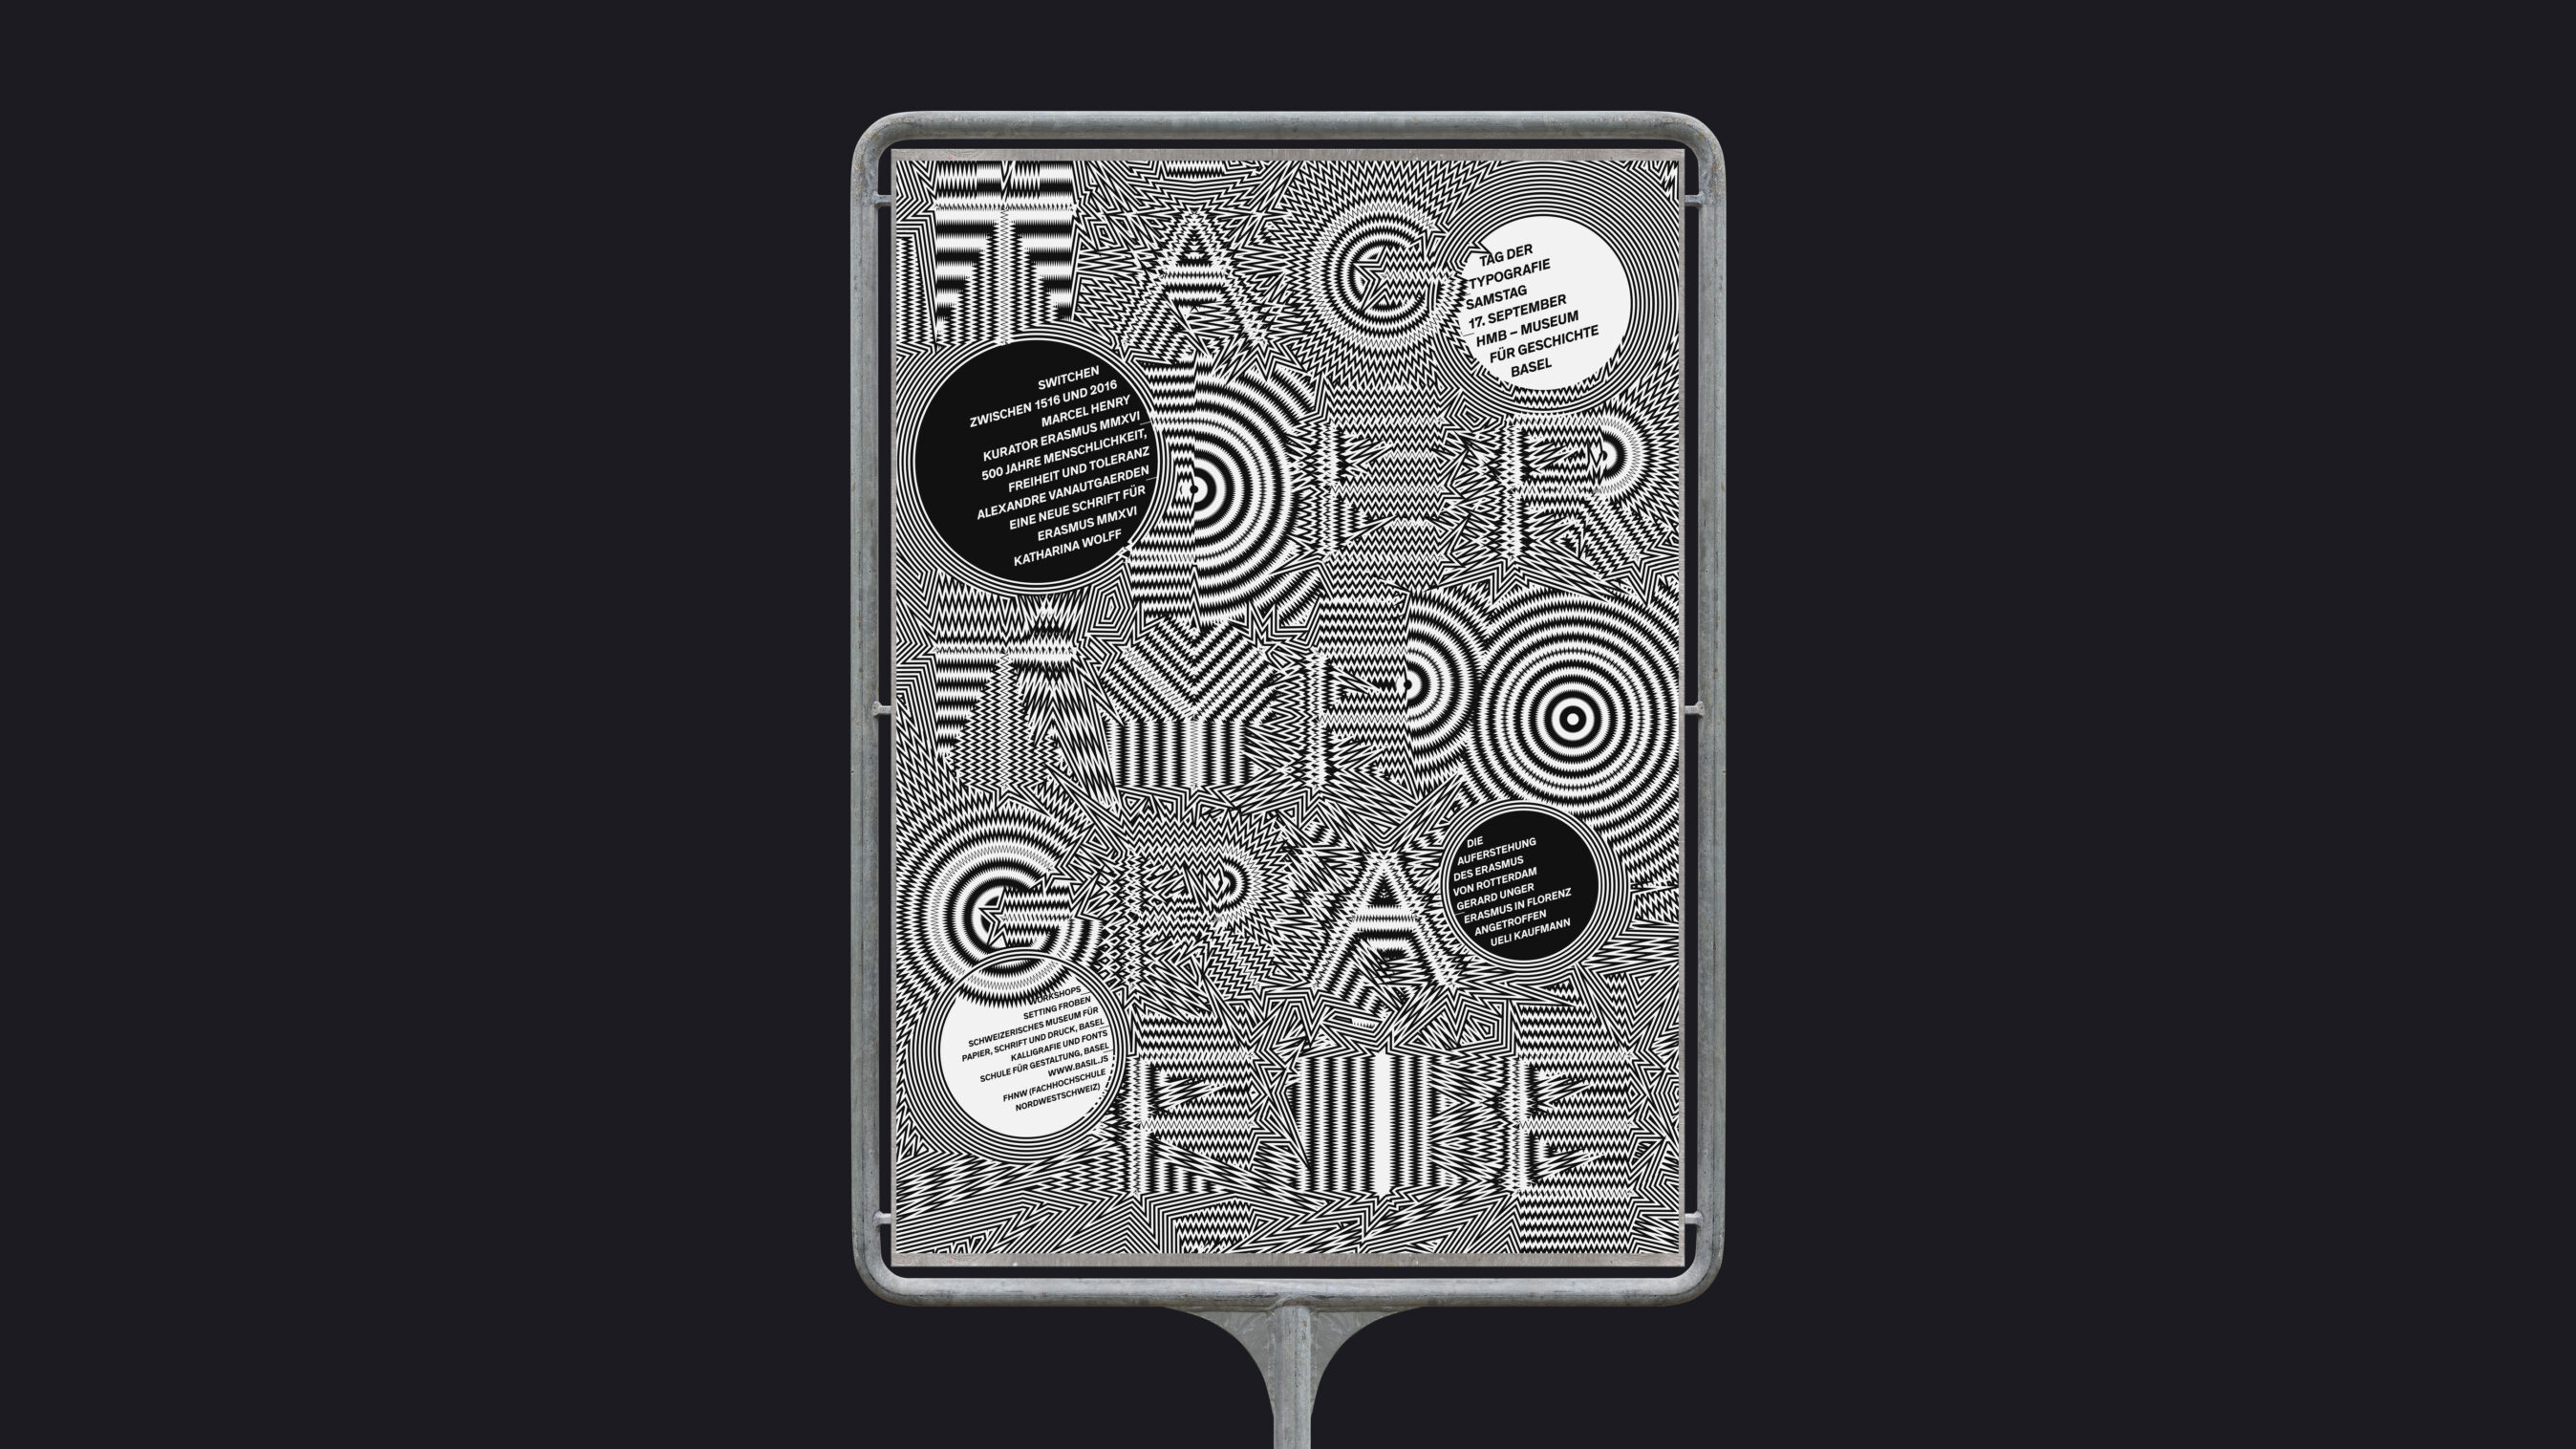 Plakat und Flyer Gestaltung für die Werbung des Musterverkaufs von Deelux in Zürich. Die Design-Elemente bestehen aus Kleidungsstücken, die als einzelne Buchstaben geformt sind.